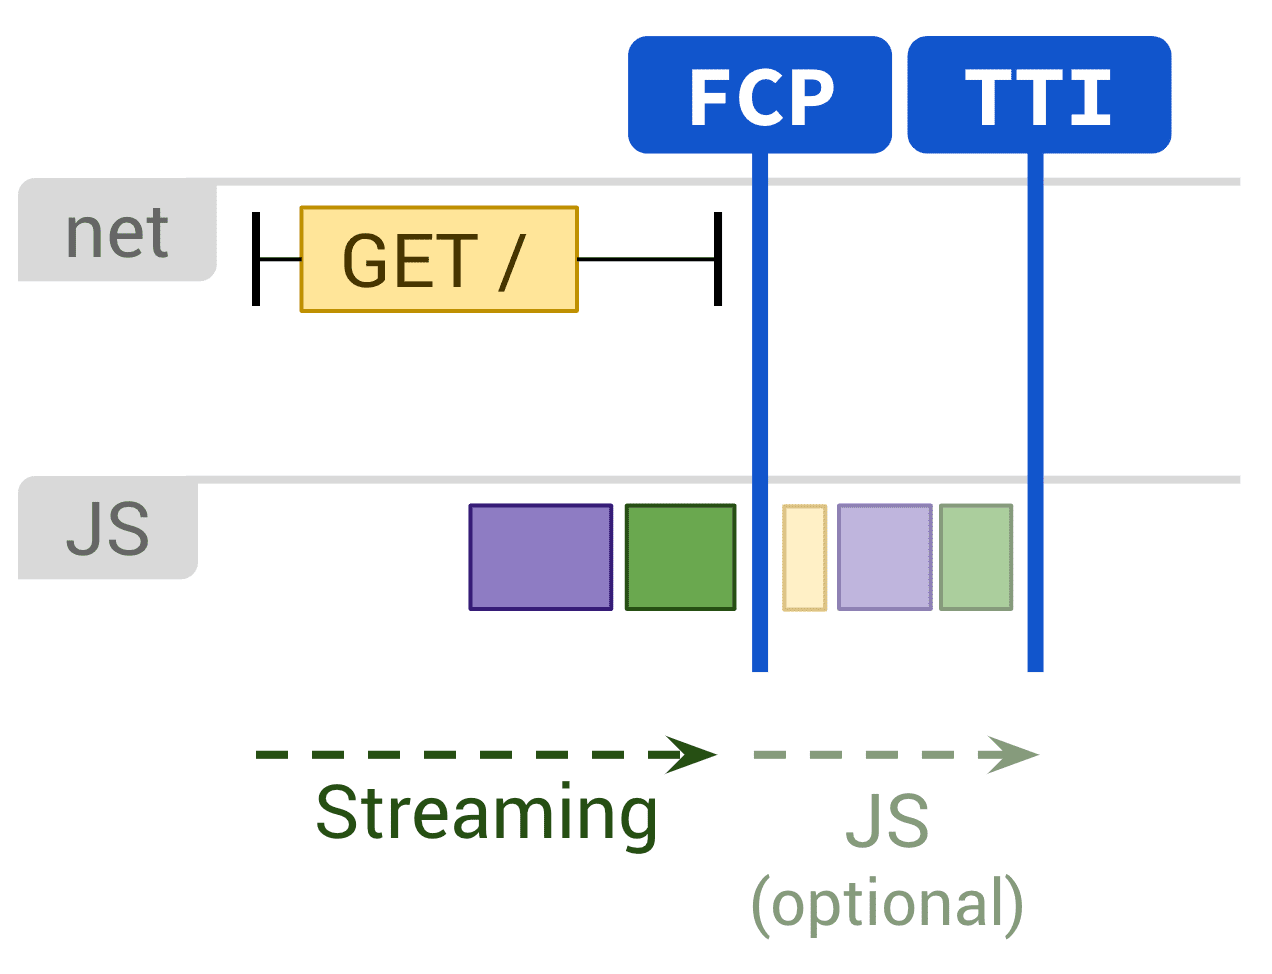 Diagrama en el que se muestra la renderización estática y la ejecución opcional de JS que afectan a FCP y TTI.